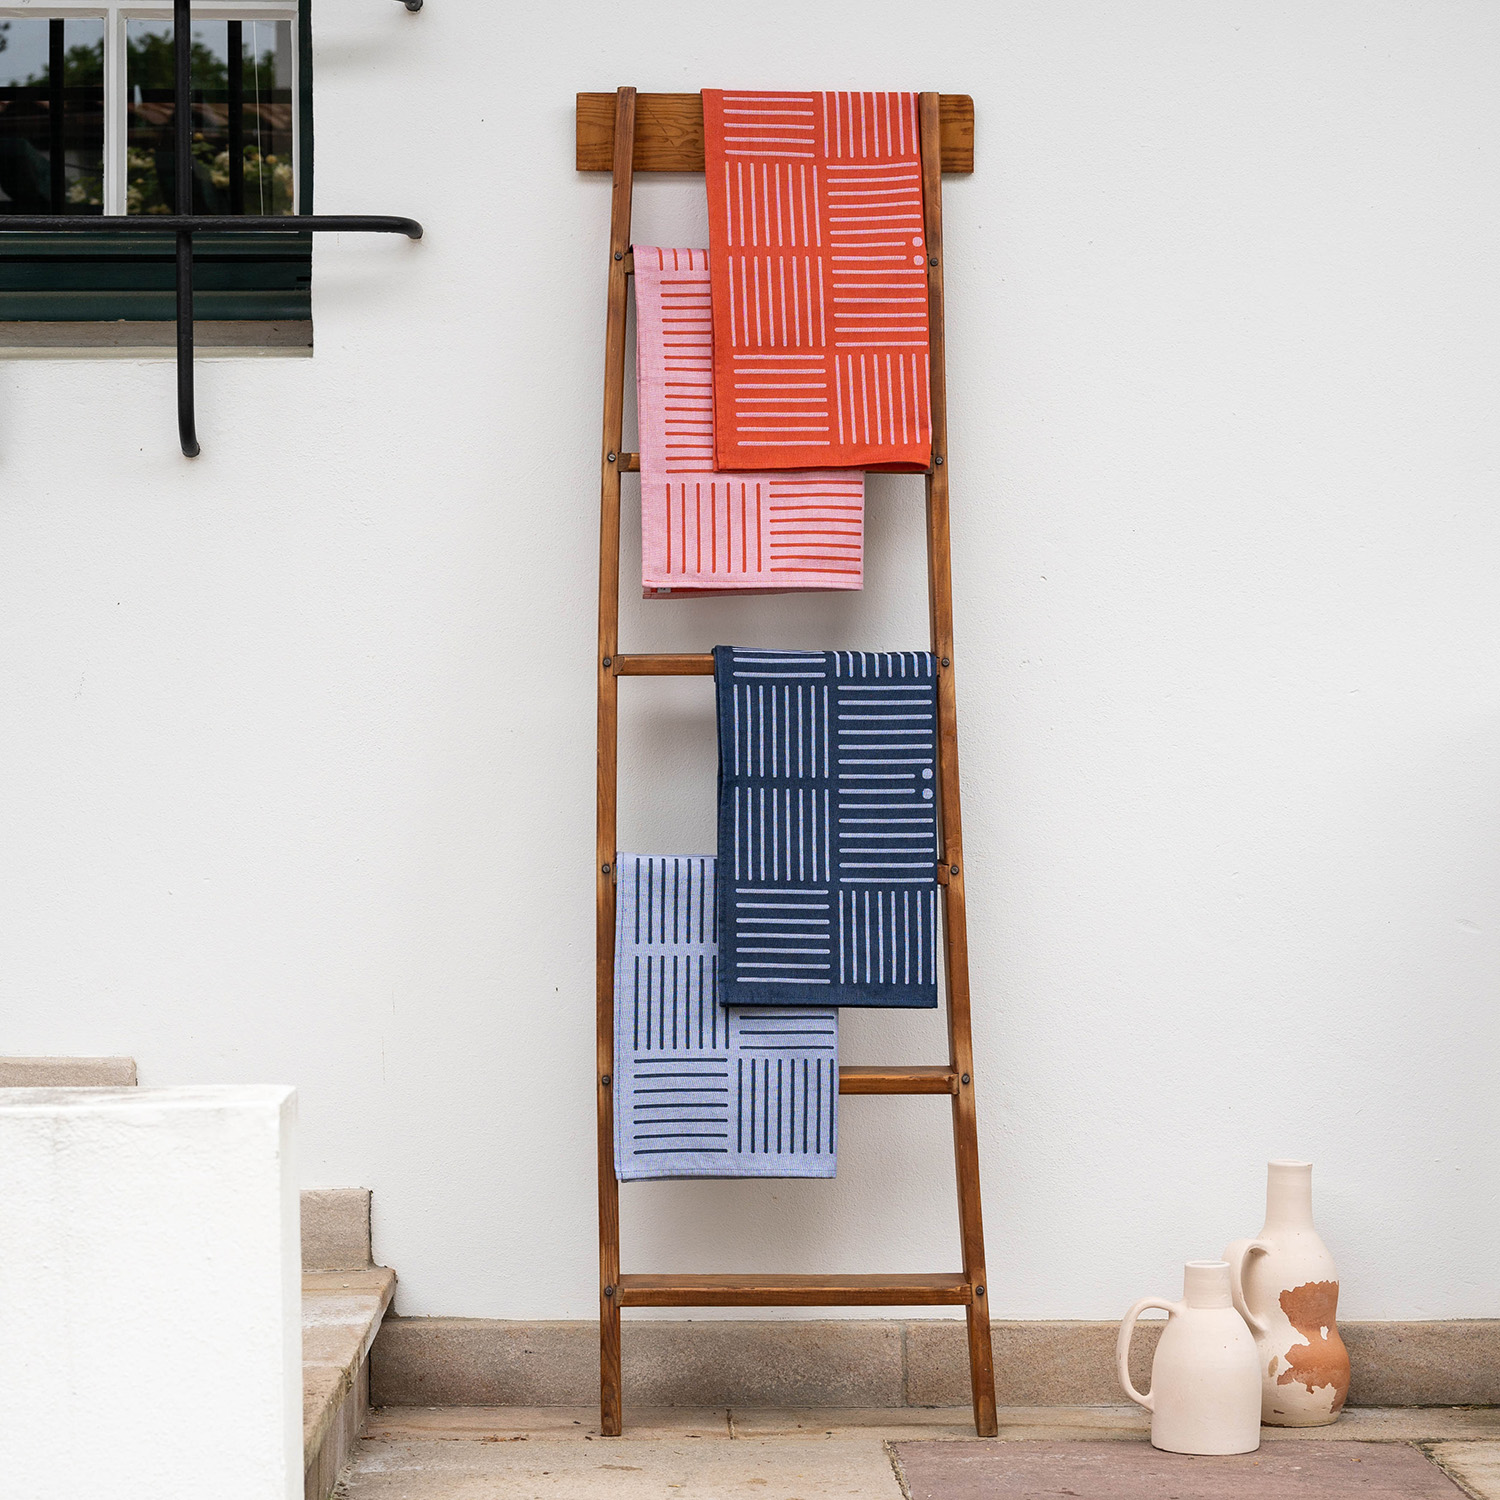 serviette de table contemporaines linge basque revisité par samuel accoceberry pour tissage moutet tissuer depuis 1919 en bearn de linge de table design et coloré